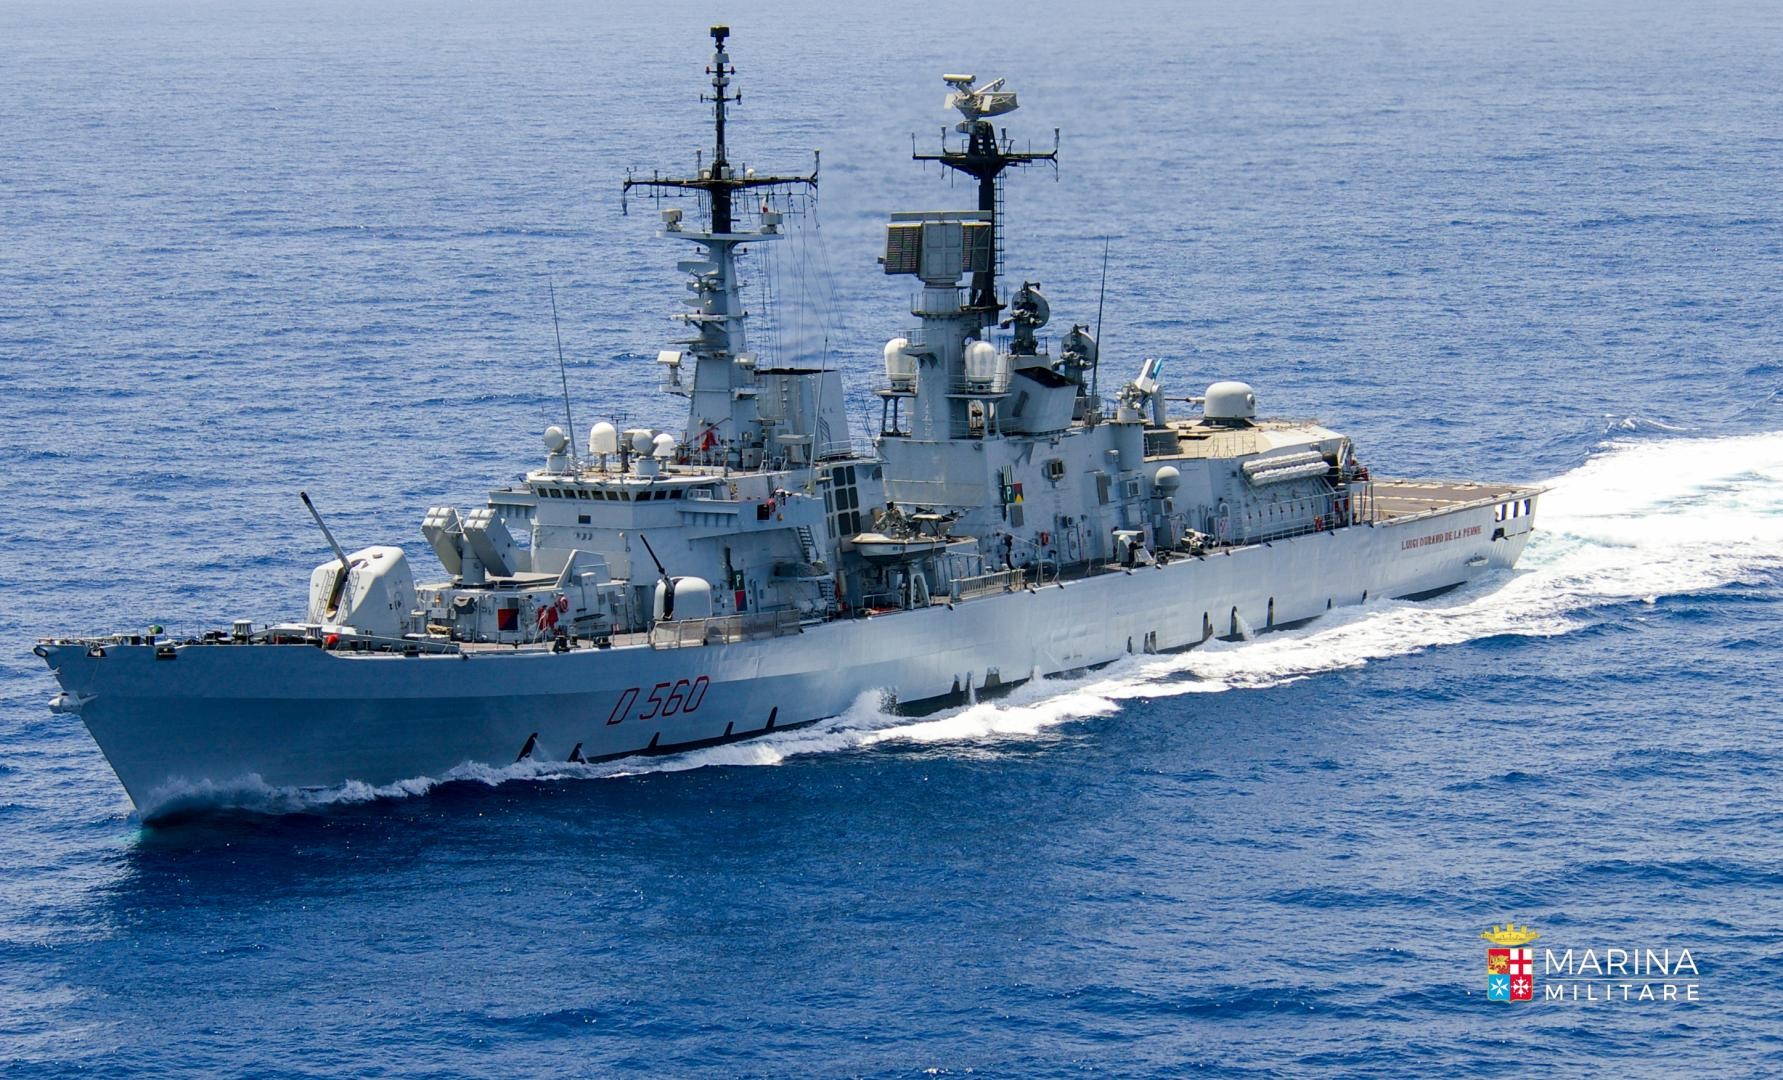 Marina Militare: Nave Durand de la Penne nel bacino del Mar Nero